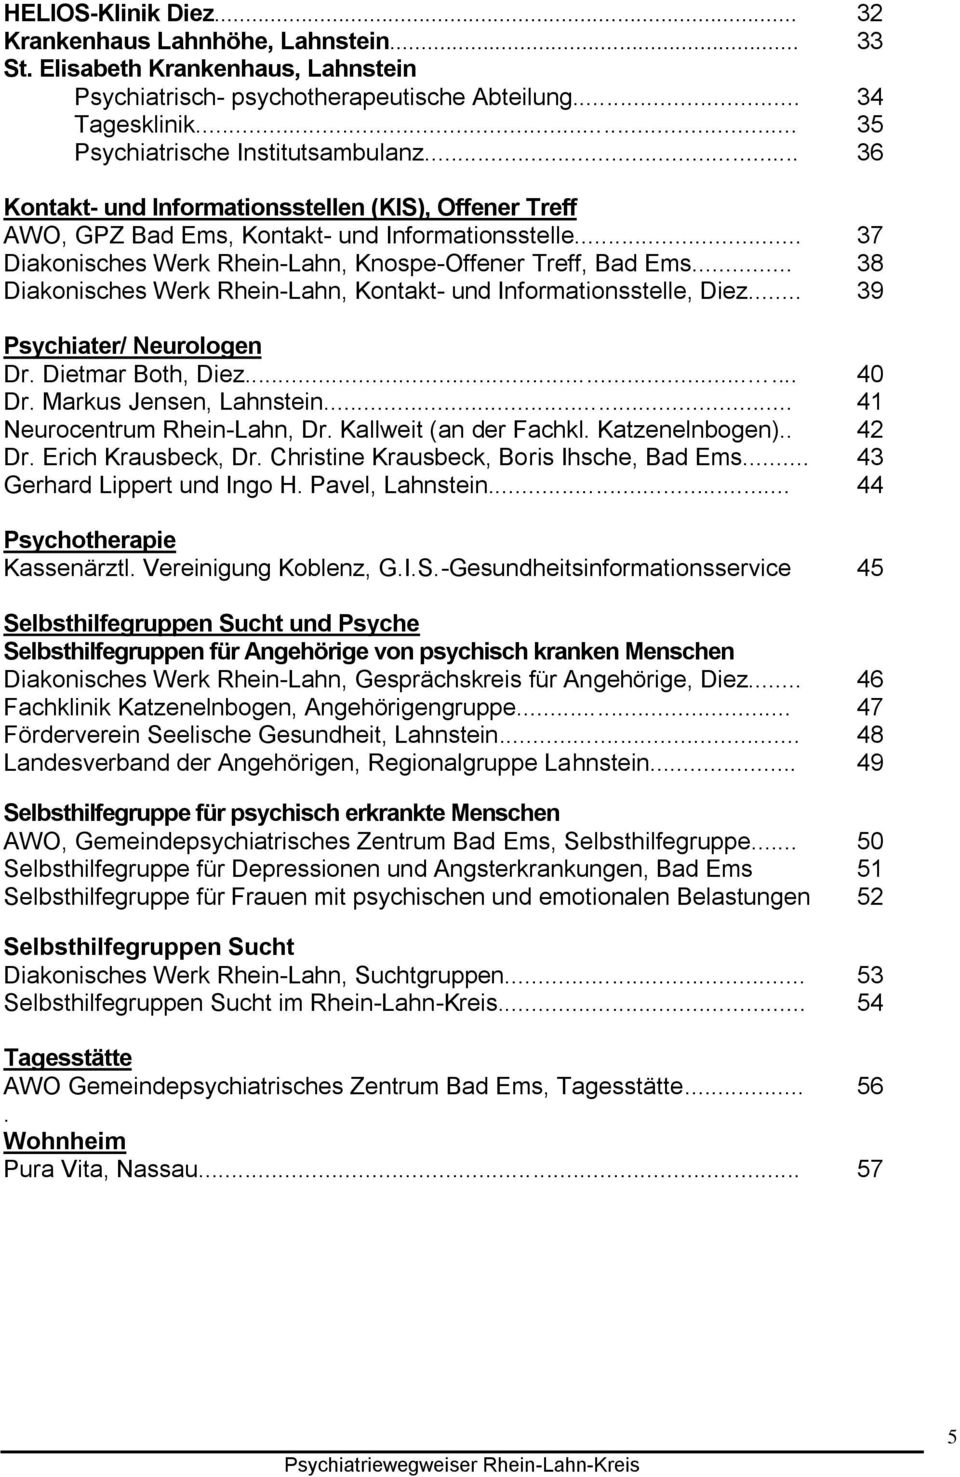 .. 37 Diakonisches Werk Rhein-Lahn, Knospe-Offener Treff, Bad Ems... 38 Diakonisches Werk Rhein-Lahn, Kontakt- und Informationsstelle, Diez... 39 Psychiater/ Neurologen Dr. Dietmar Both, Diez...... 40 Dr.